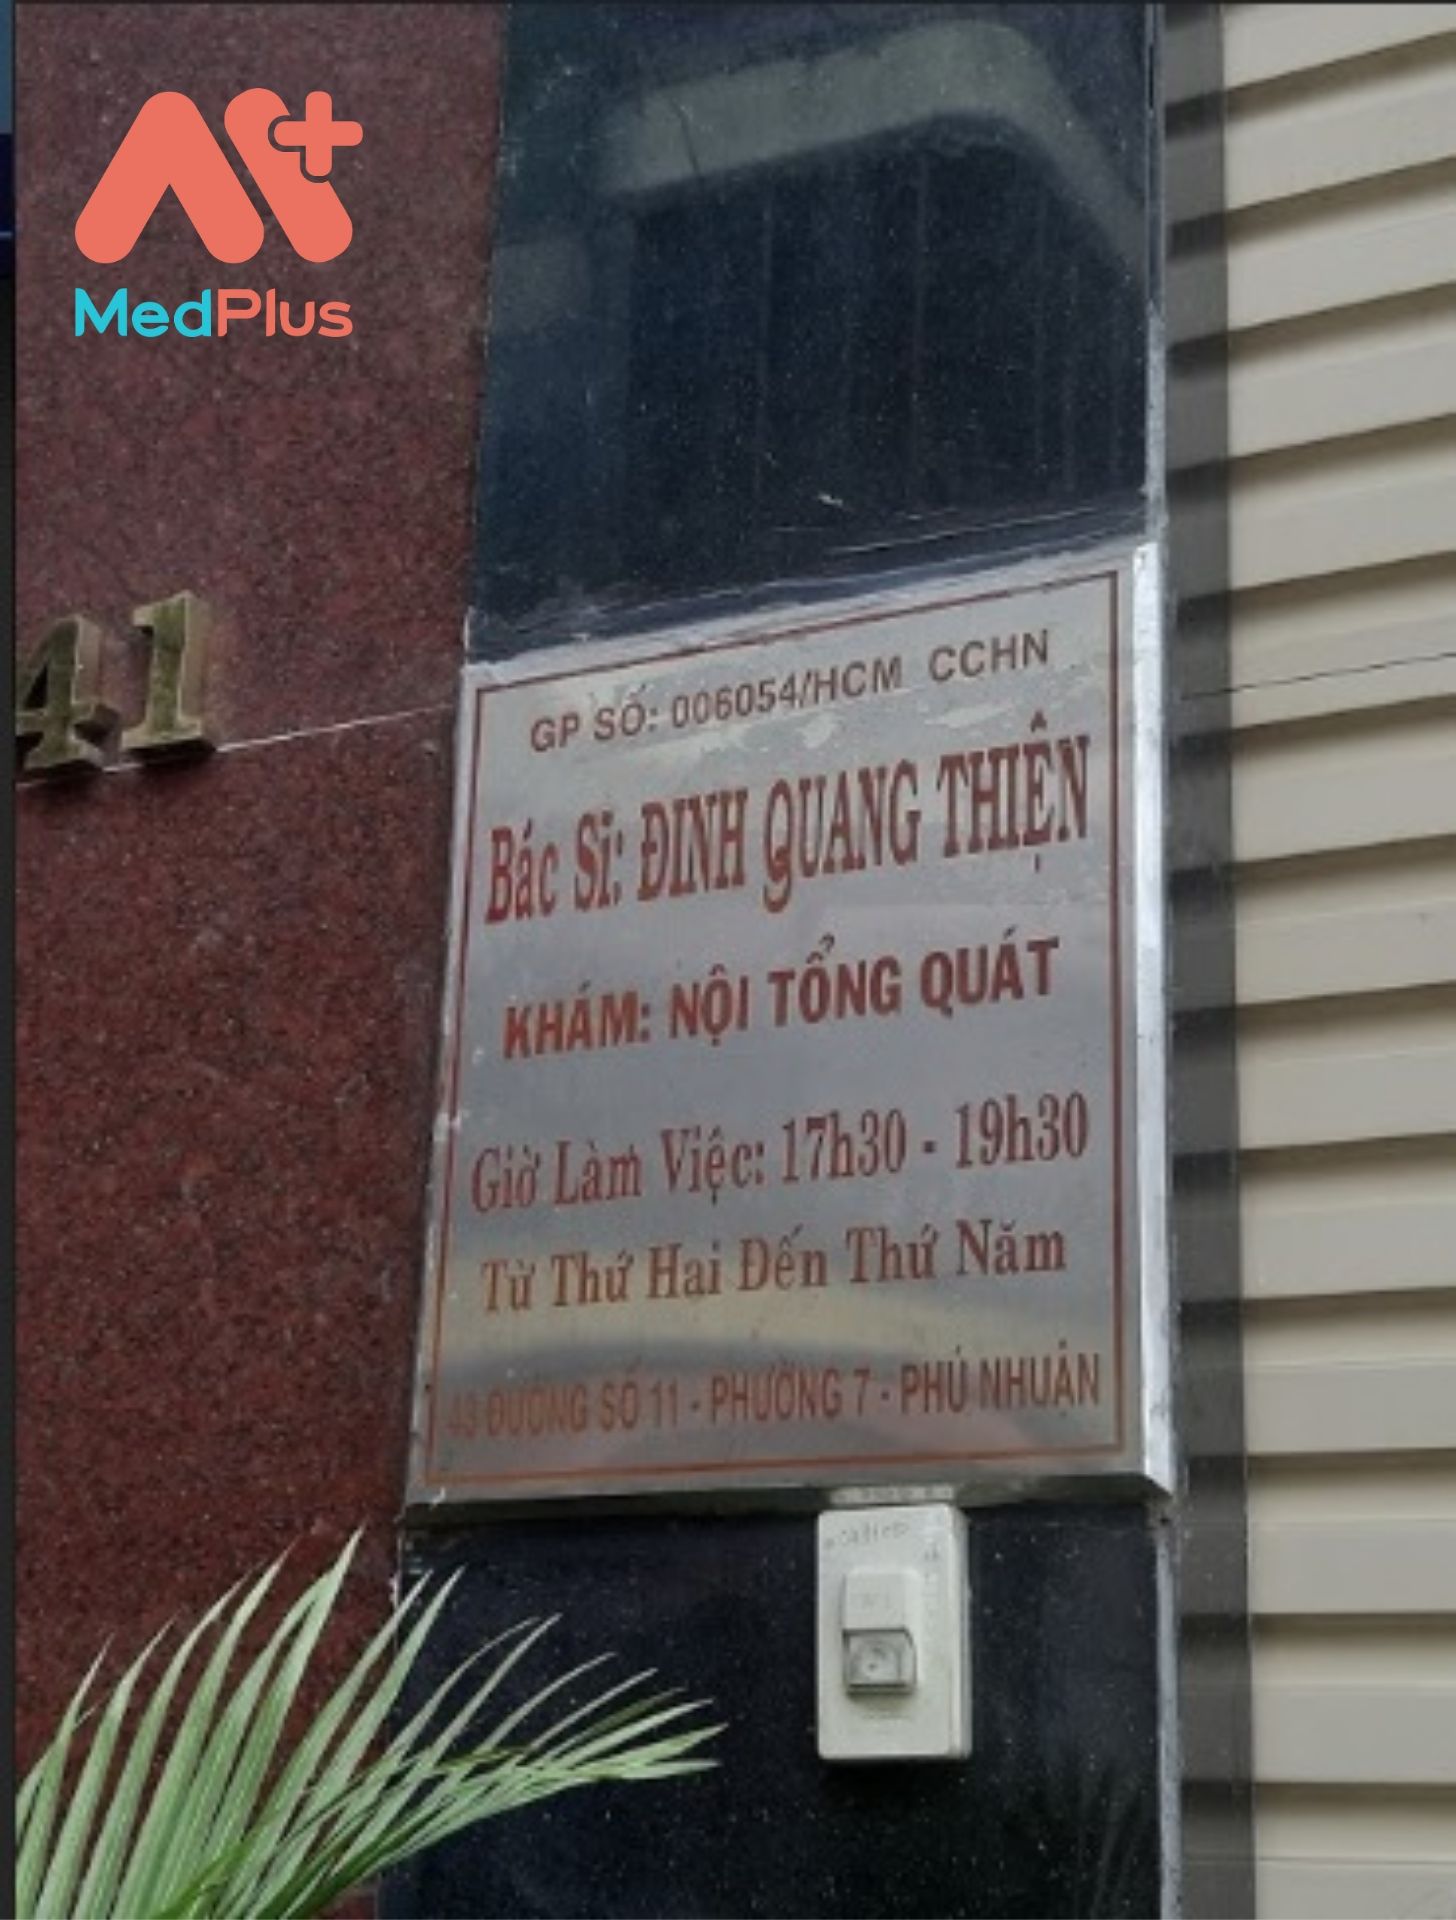 Phòng khám nội tổng quát Bác sĩ Đinh Quang Thiện